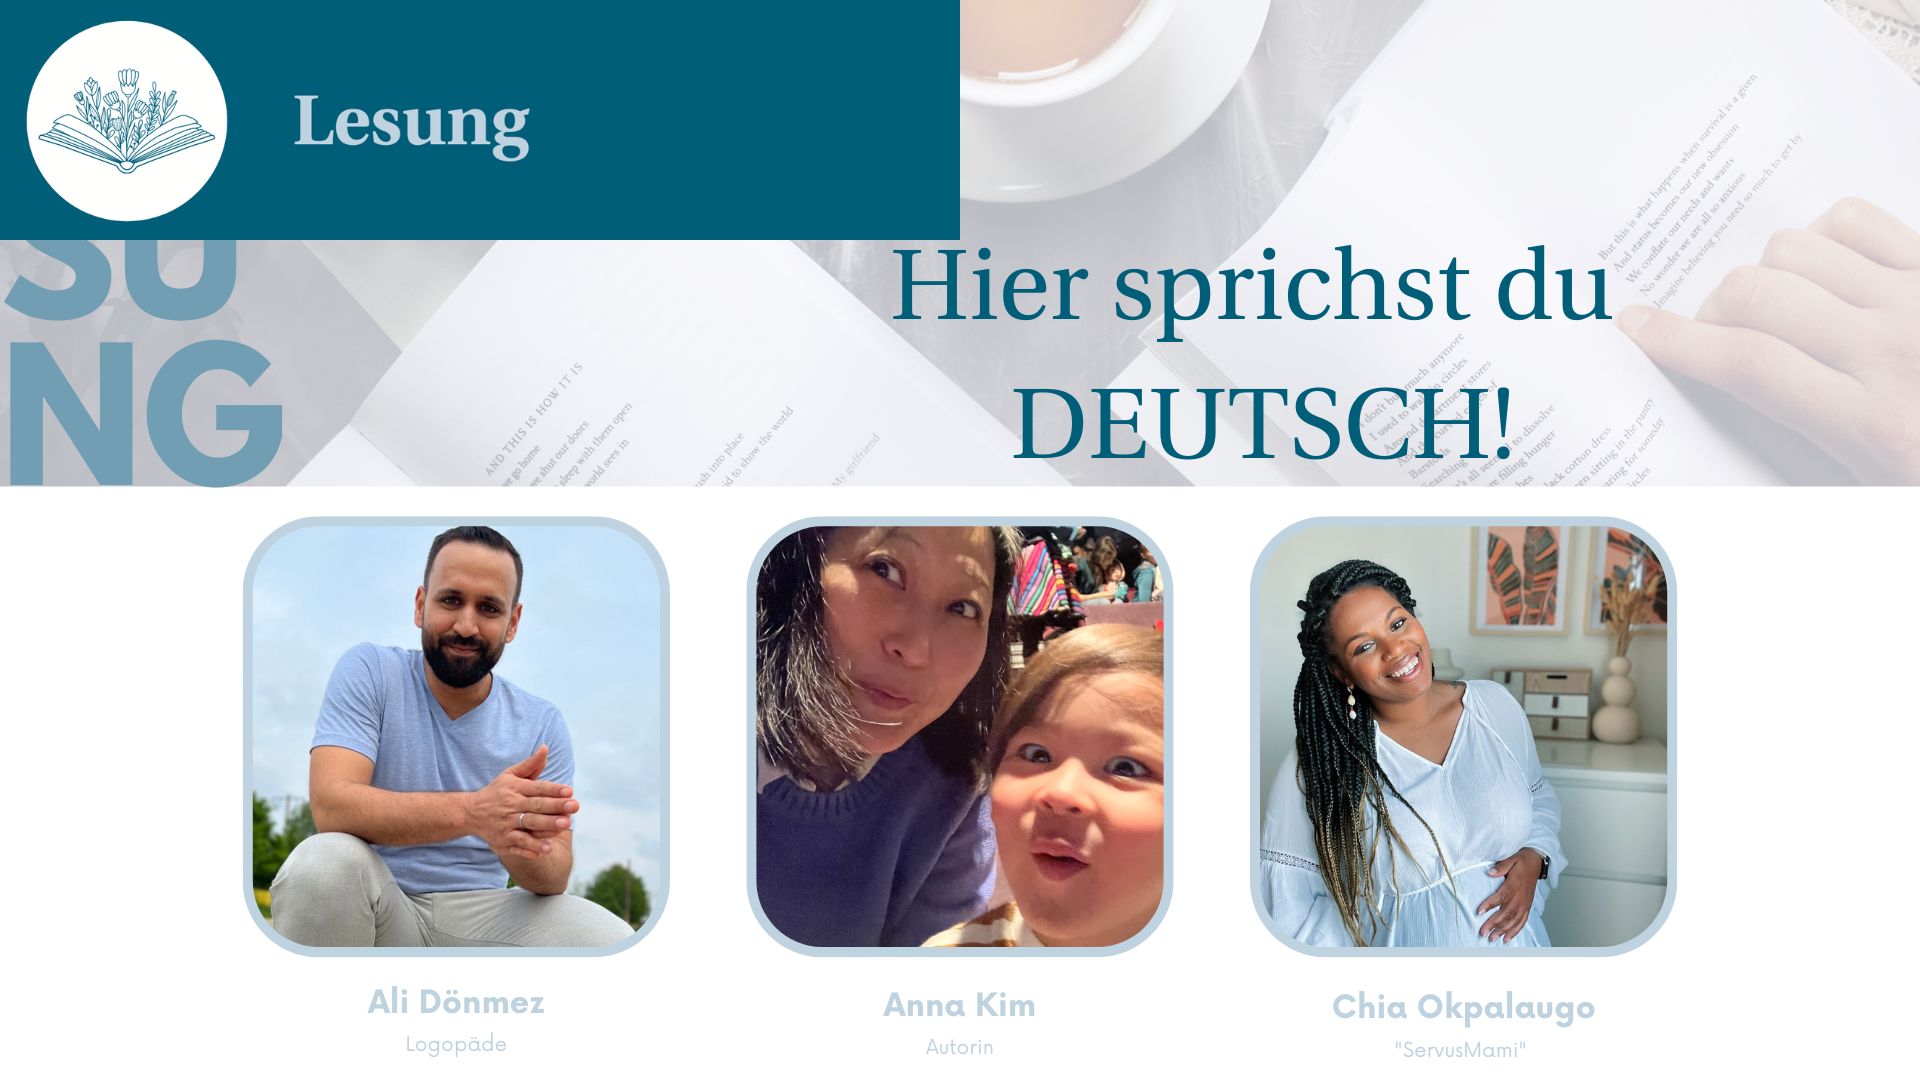 „Hier sprichst du Deutsch!“ – Lesung & Diskussion zu Mehrsprachigkeit